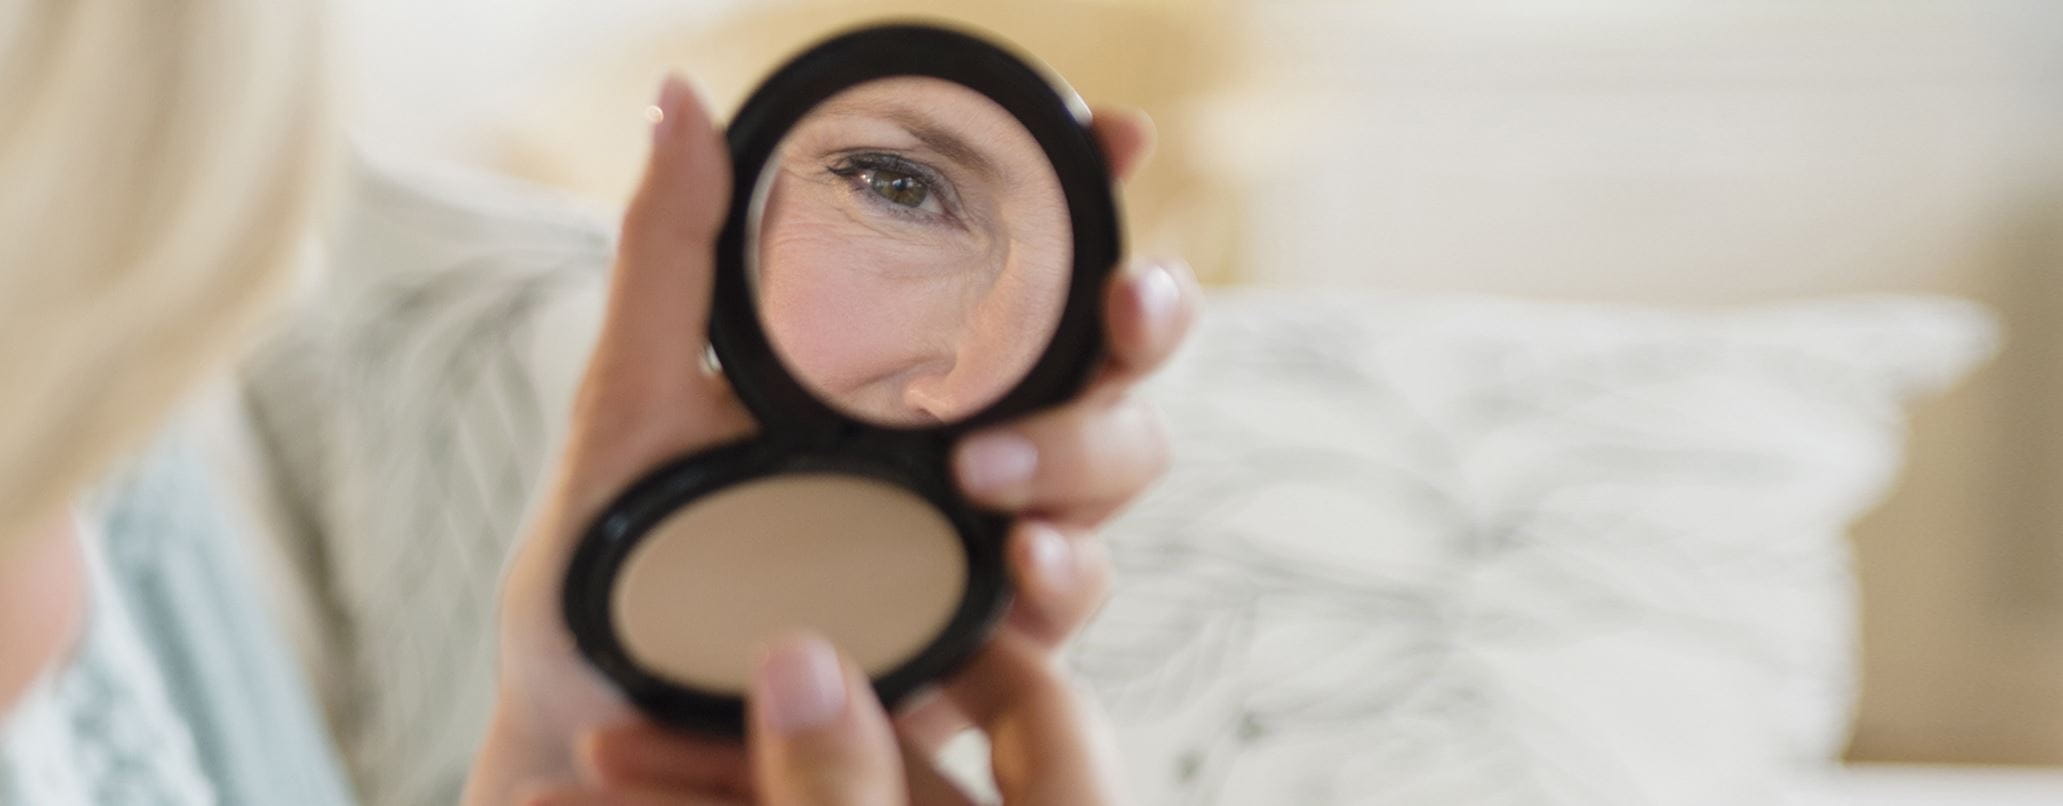 Schlupflider schminken: Tipps für das Augen Make-up